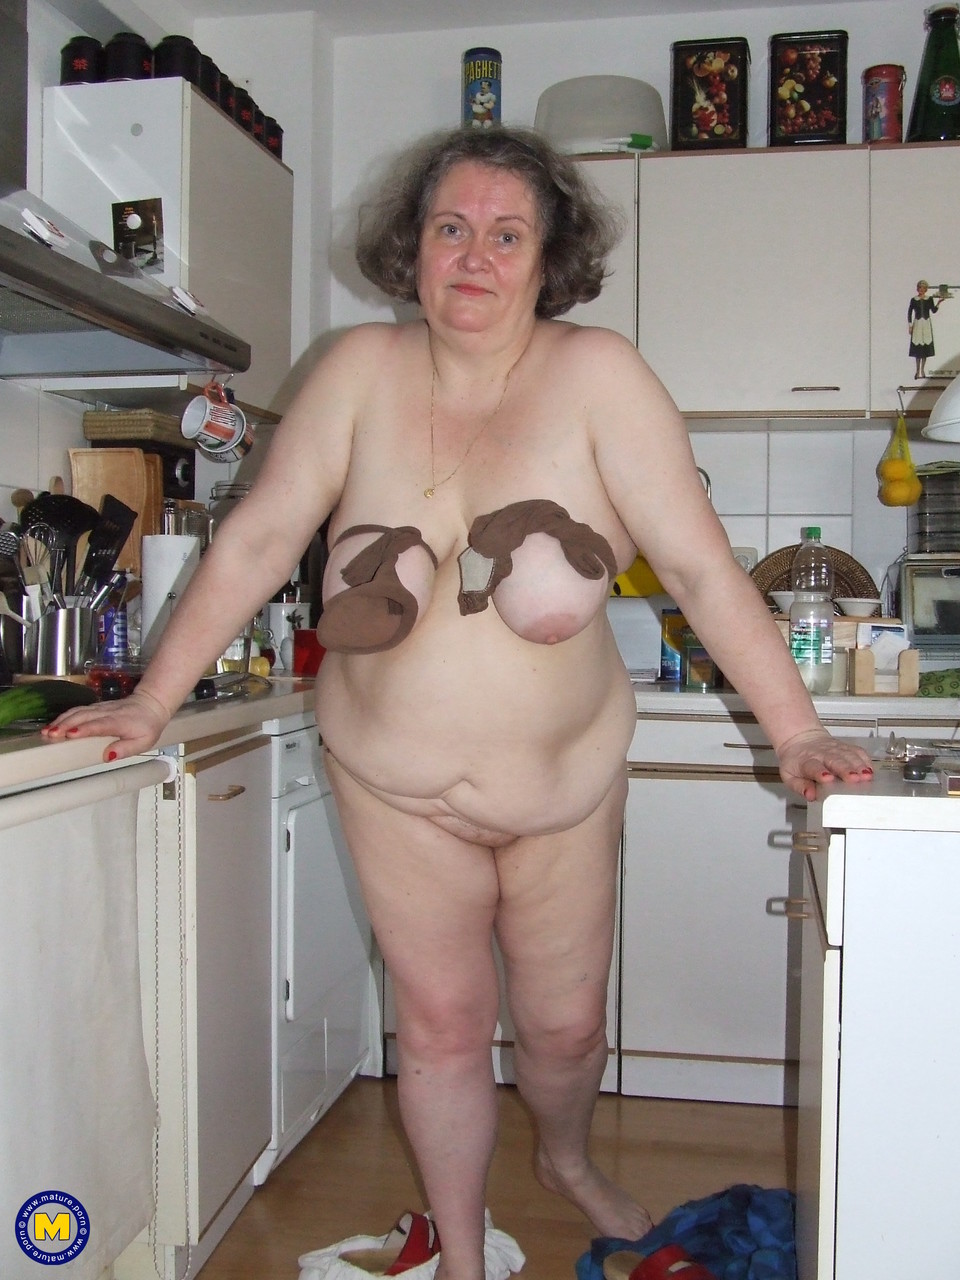 Fat mature housewife Birgid masturbates with a cucumber in the kitchen foto porno #423883243 | Mature NL Pics, Birgid, Granny, porno ponsel